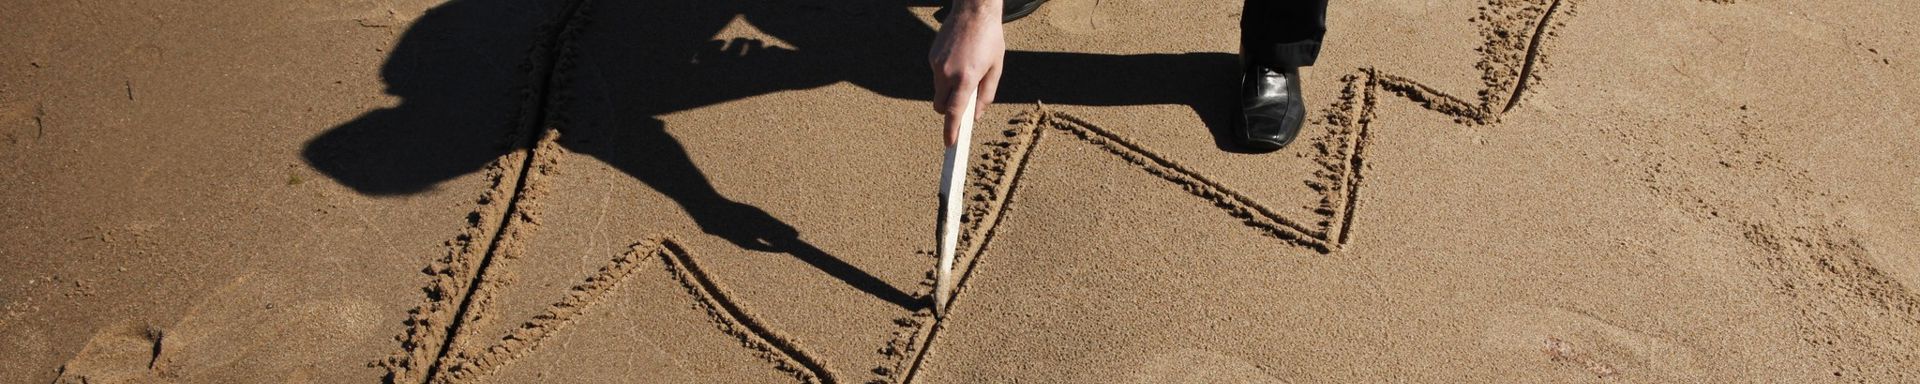 Henkilö piirtää kaaviota hiekalle.